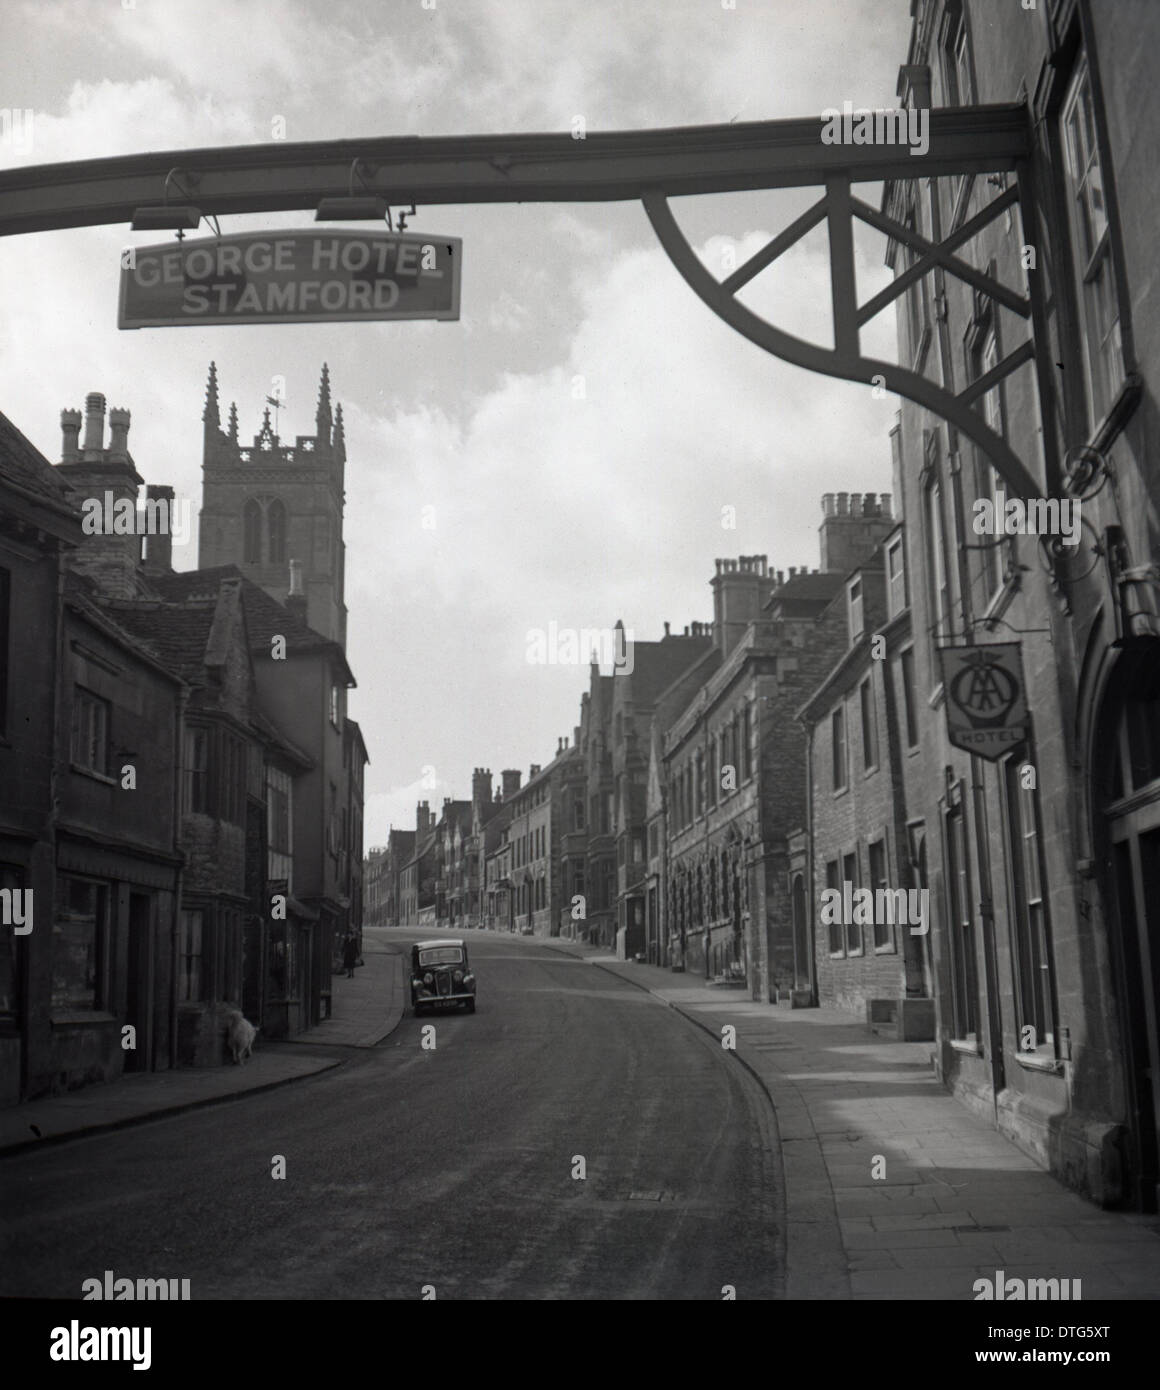 Années 1950 et un tableau historique montrant un quartier high street et un signe pour le George Hotel, Stamford, Lincolnshire. Banque D'Images